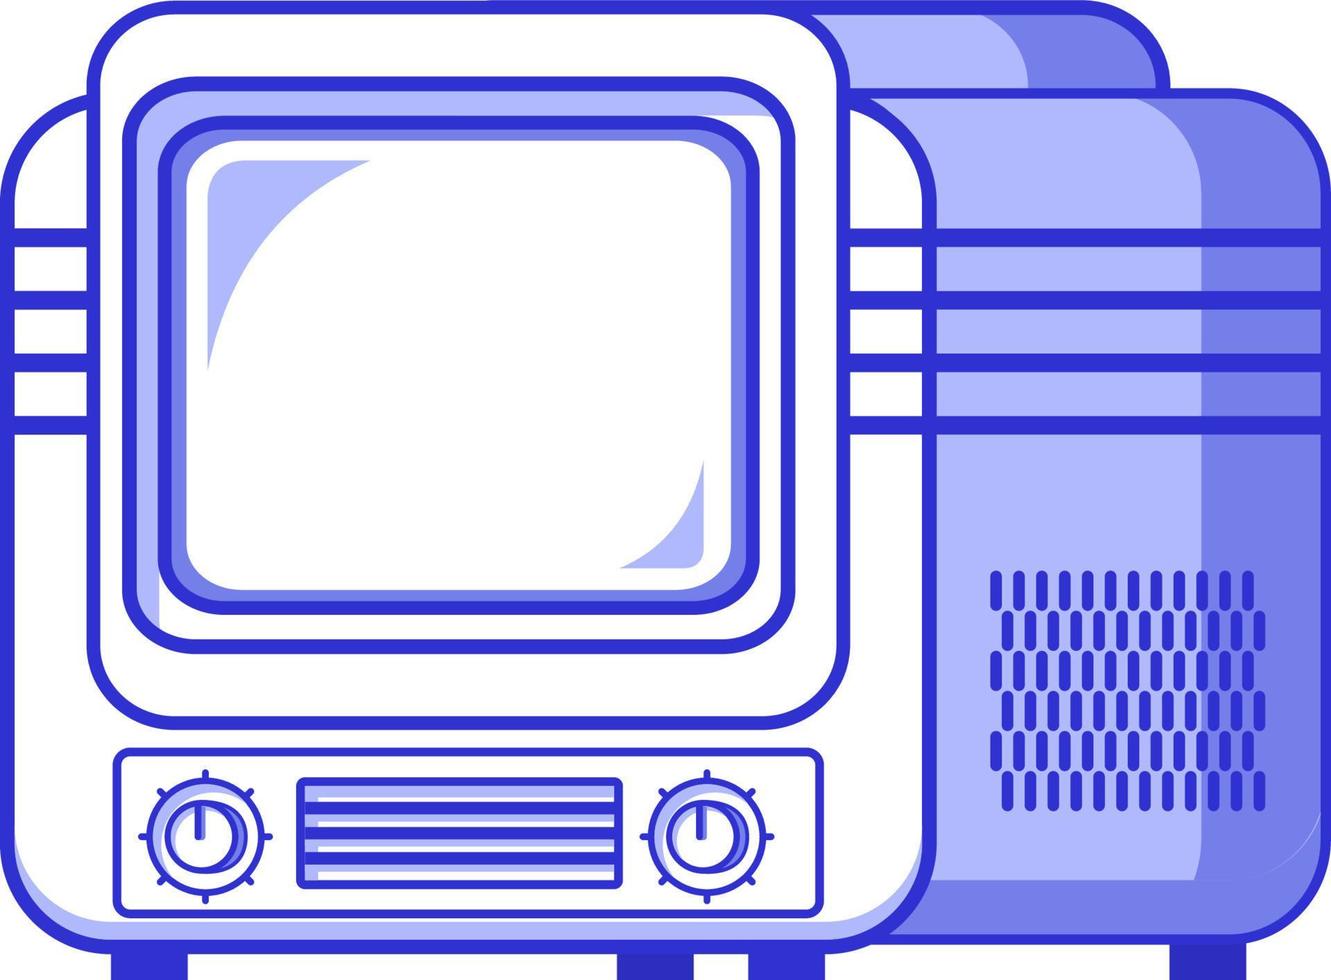 tv antigua.icono de televisión vintage retro.vector plano de contorno aislado en un fondo blanco.símbolo para una aplicación móvil o sitio web. vector